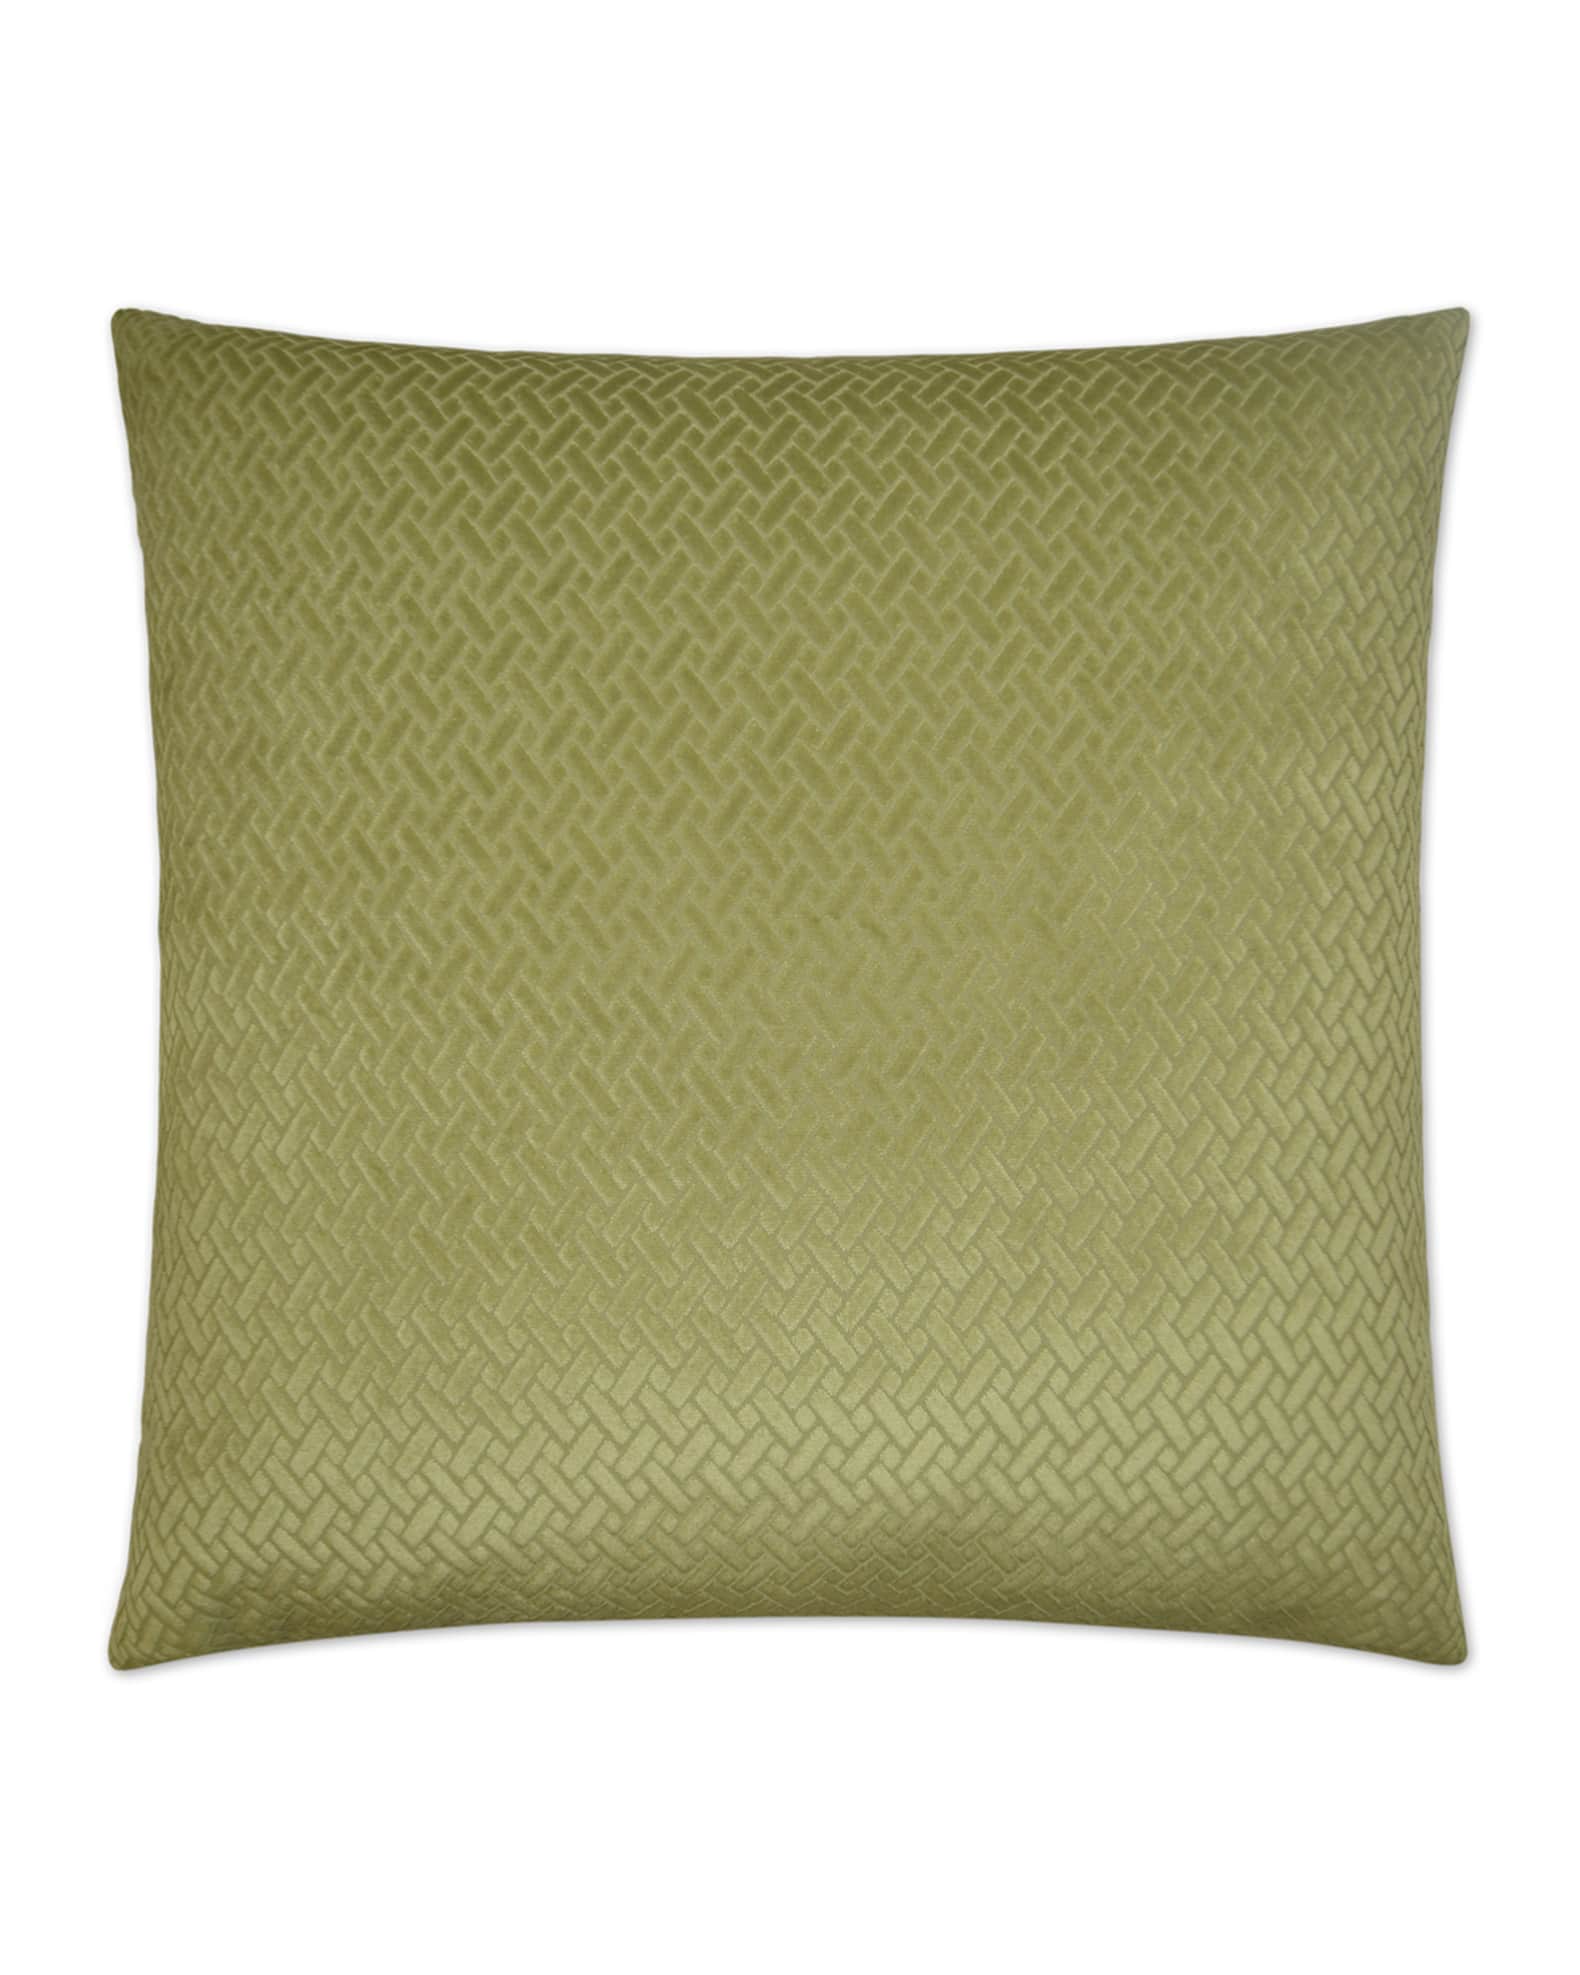 D.V. KAP Home Azure Maze Pillow